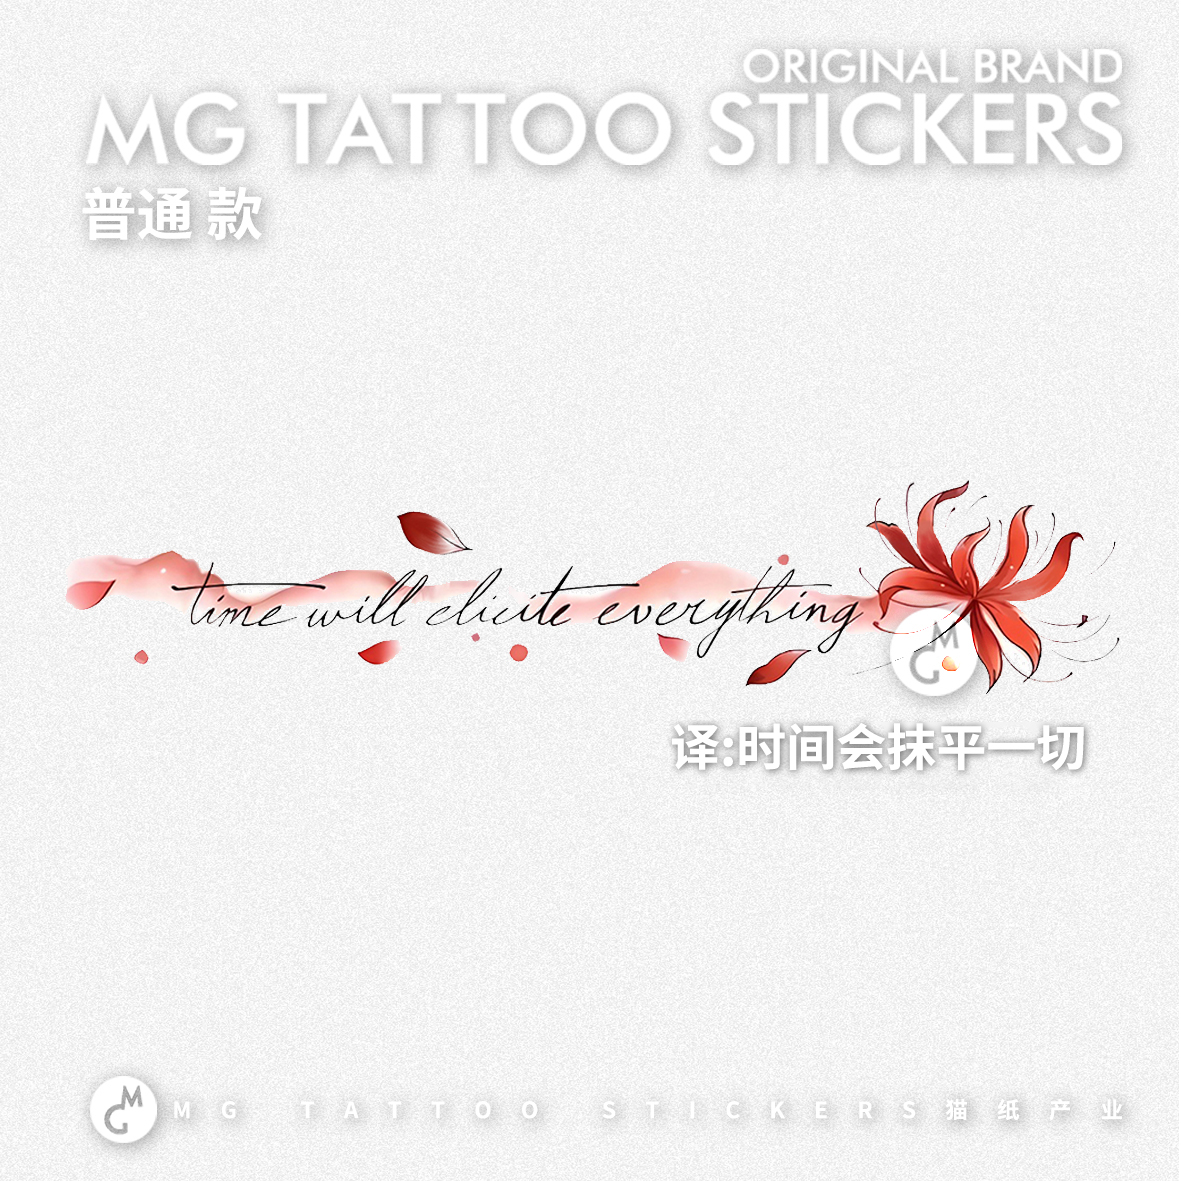 MG tattoo 时间会抹平一切 红色英文彼岸花唯美文艺锁骨纹身贴纸